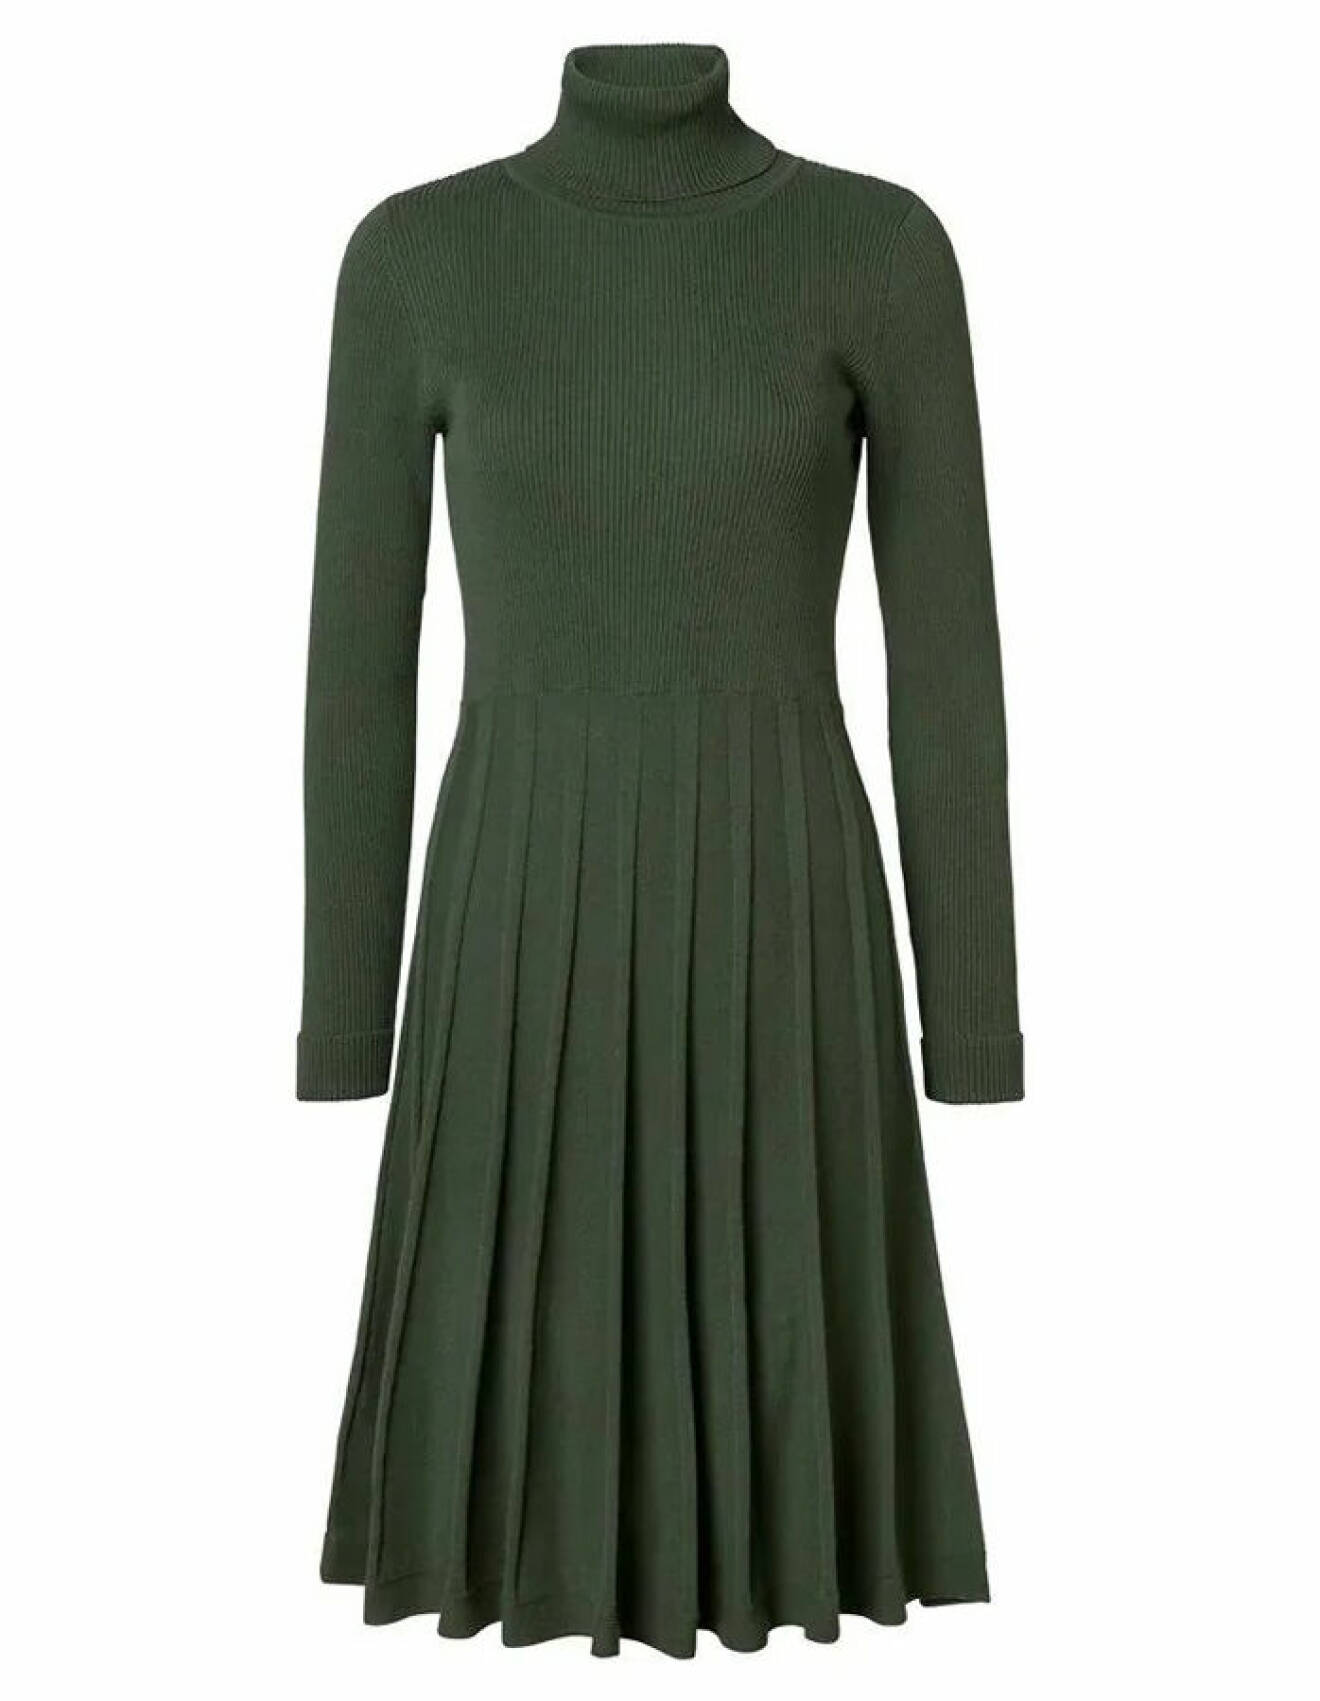 grön stickad klänning med plisserad kjol från Jumperfabriken